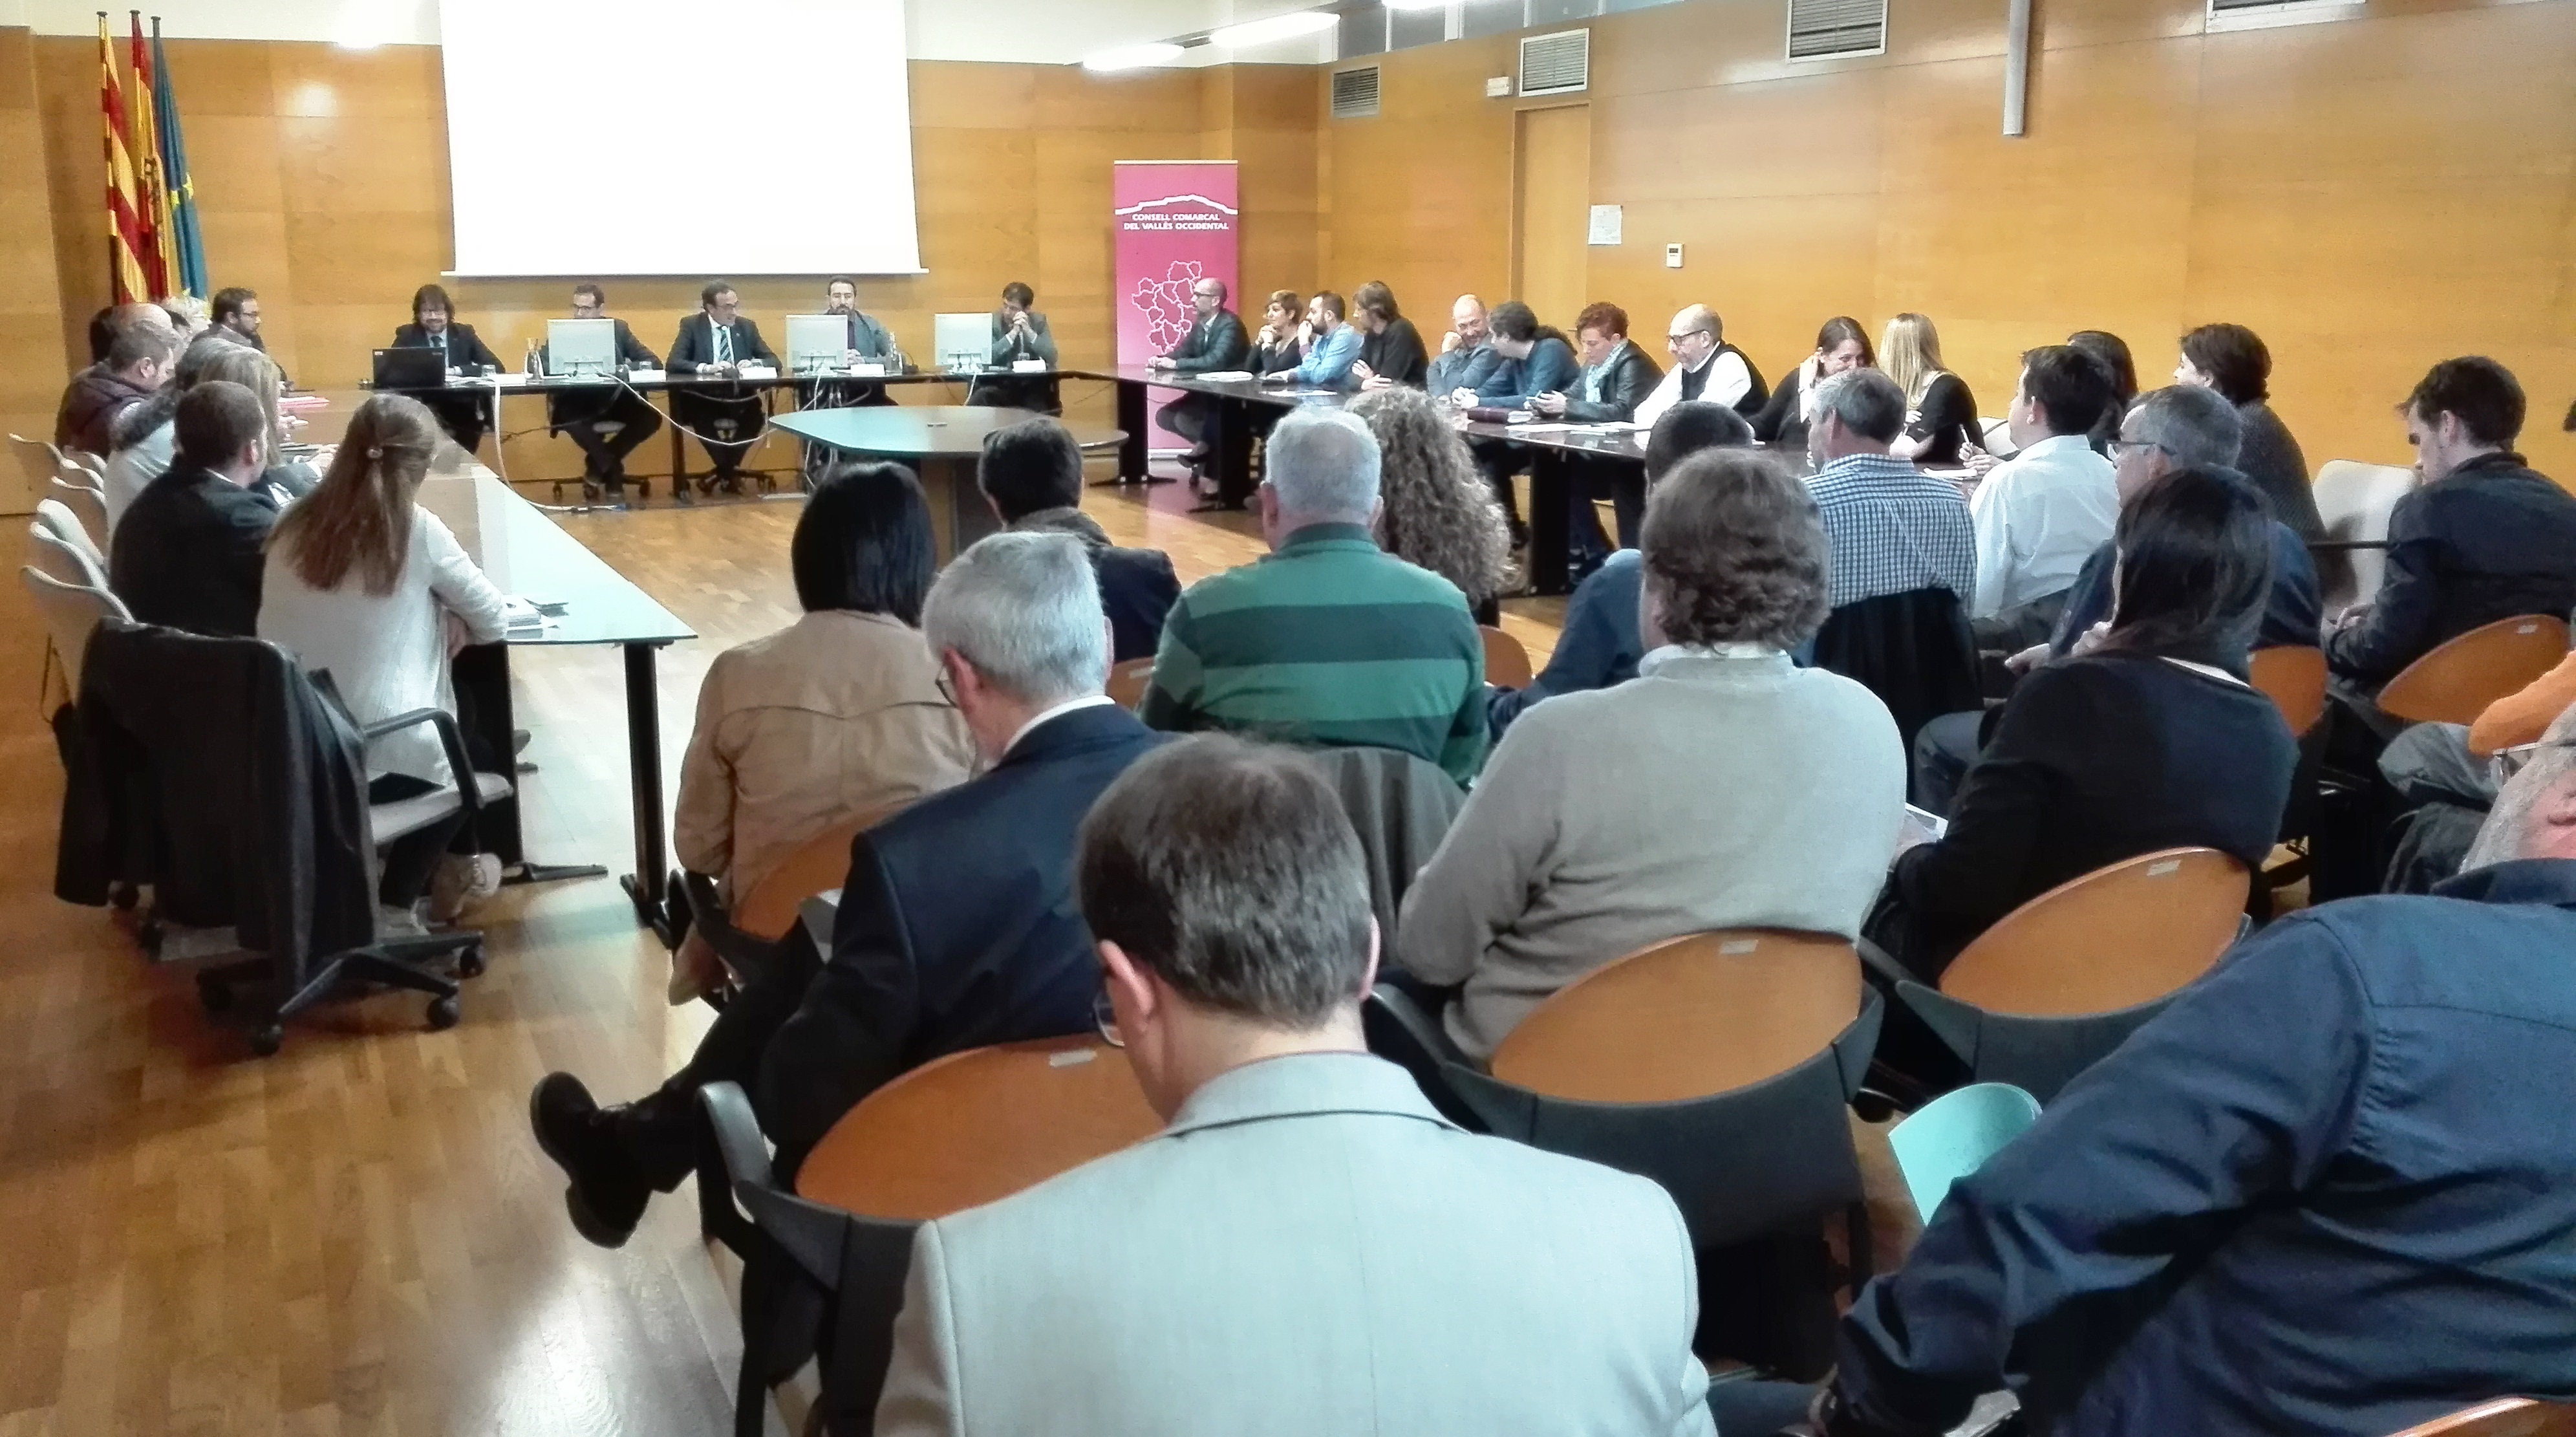 Un moment de la reunió celebrada ahir a la seu del Consell Comarcal del Vallès Occidental